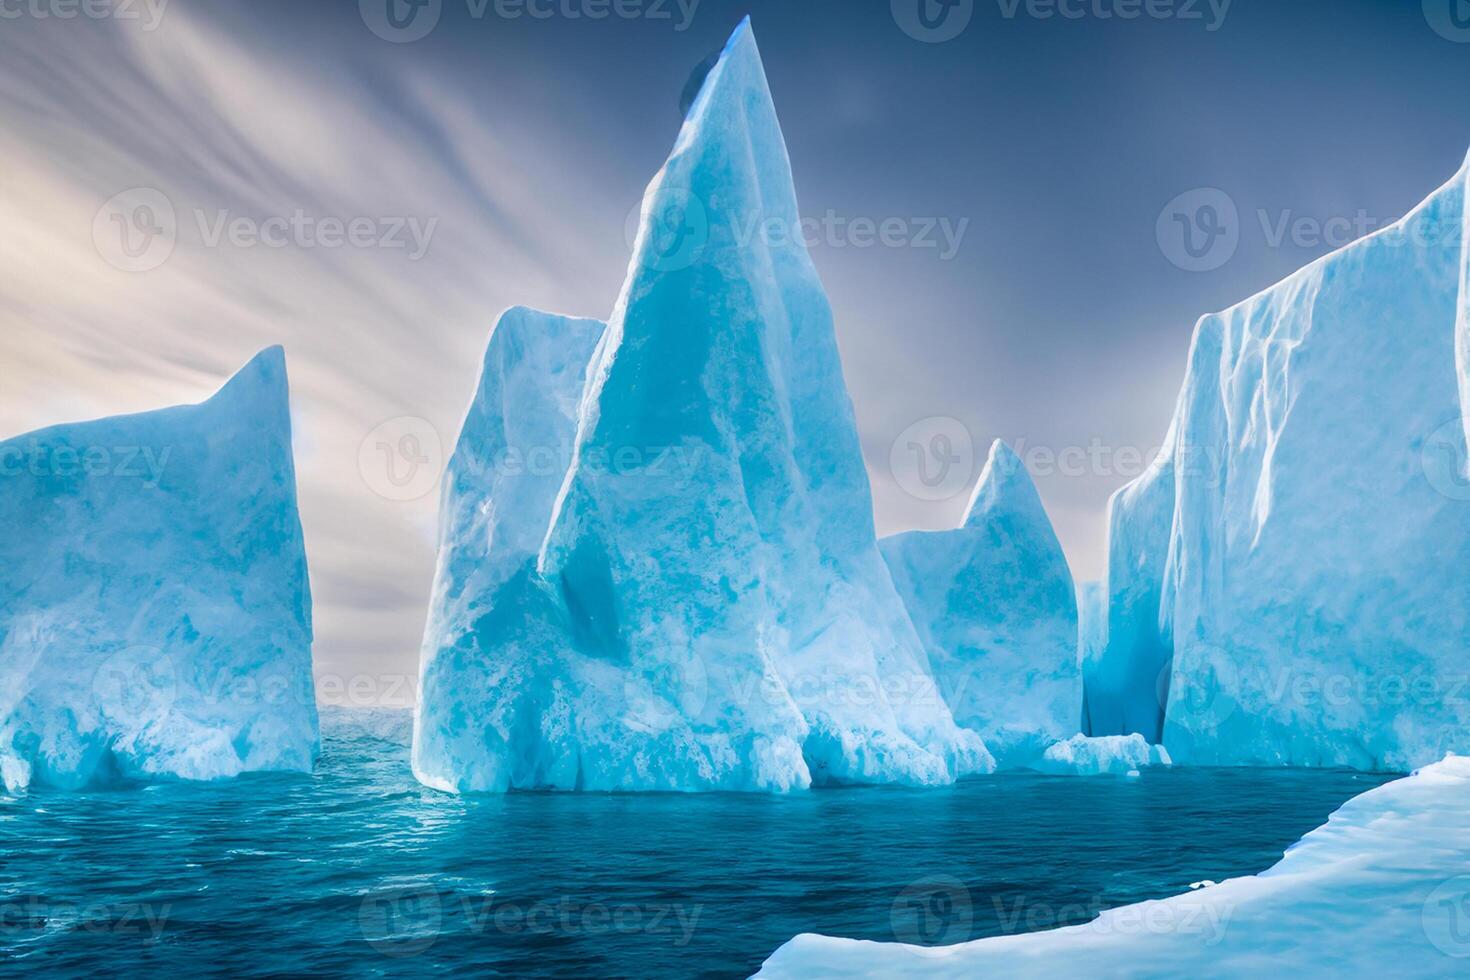 majestueus ijs kliffen gekroond door een koel atmosfeer, ingelijst door de mooi zee en lucht, toveren een harmonisch panorama van van de natuur ijzig grootsheid en oceanisch pracht foto